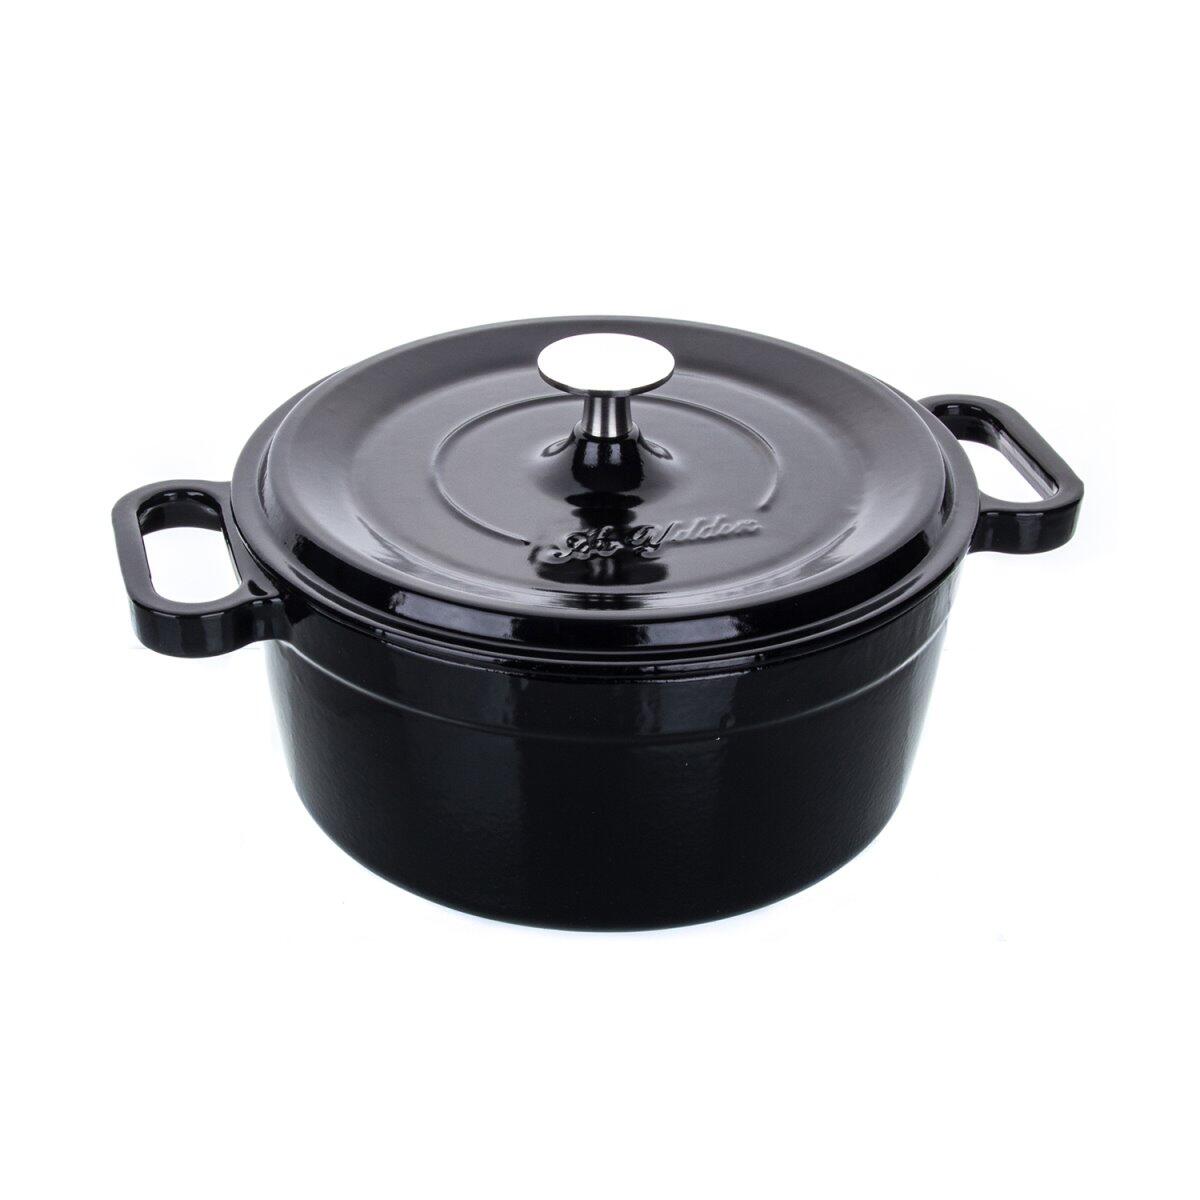 Aryıldız Cast Iron Saucepan Black 20 Cm